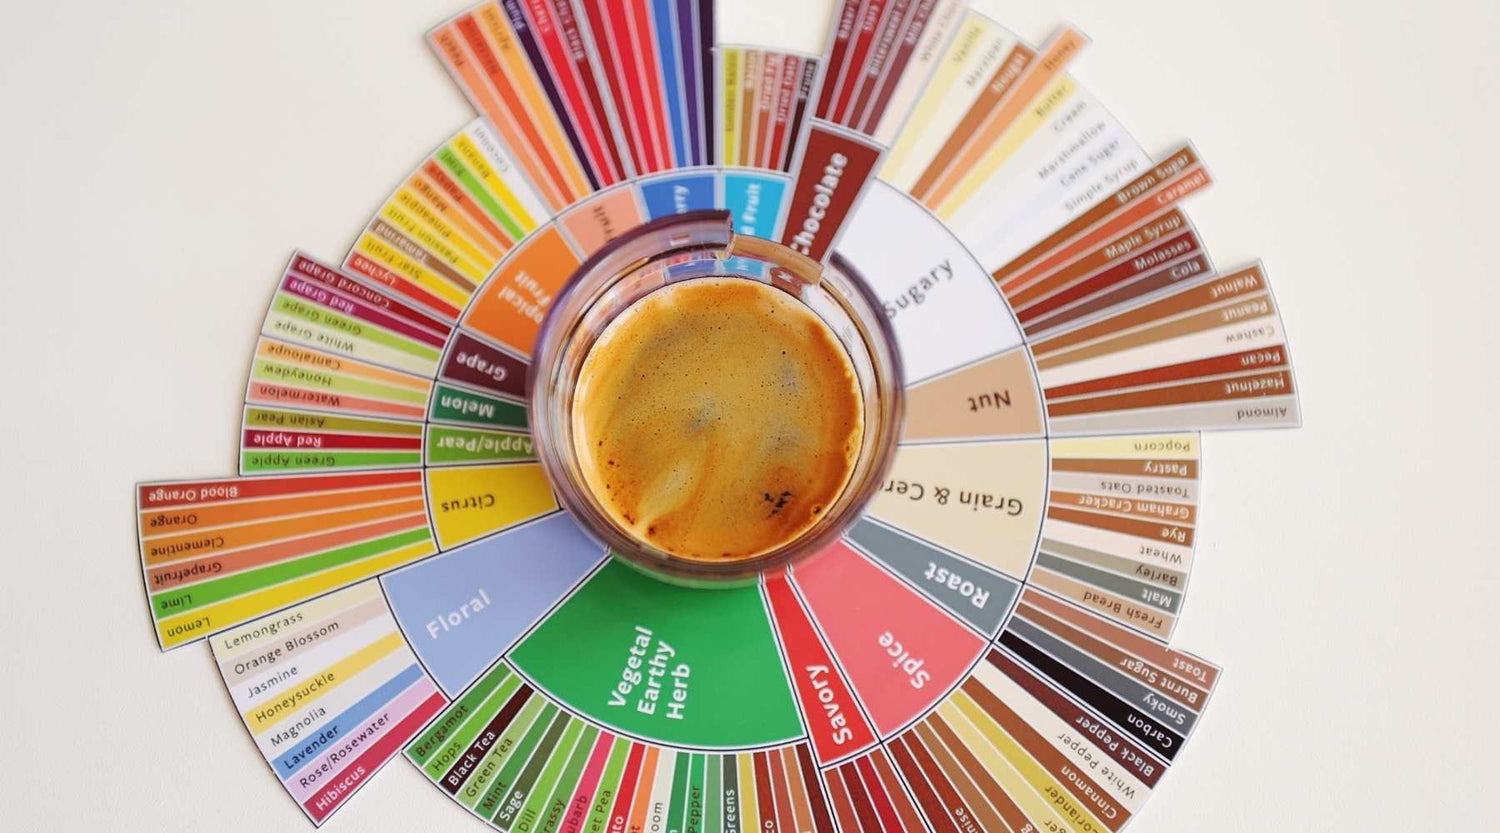 sensory, coffee sensory, coffee tasting, coffee flavor wheel